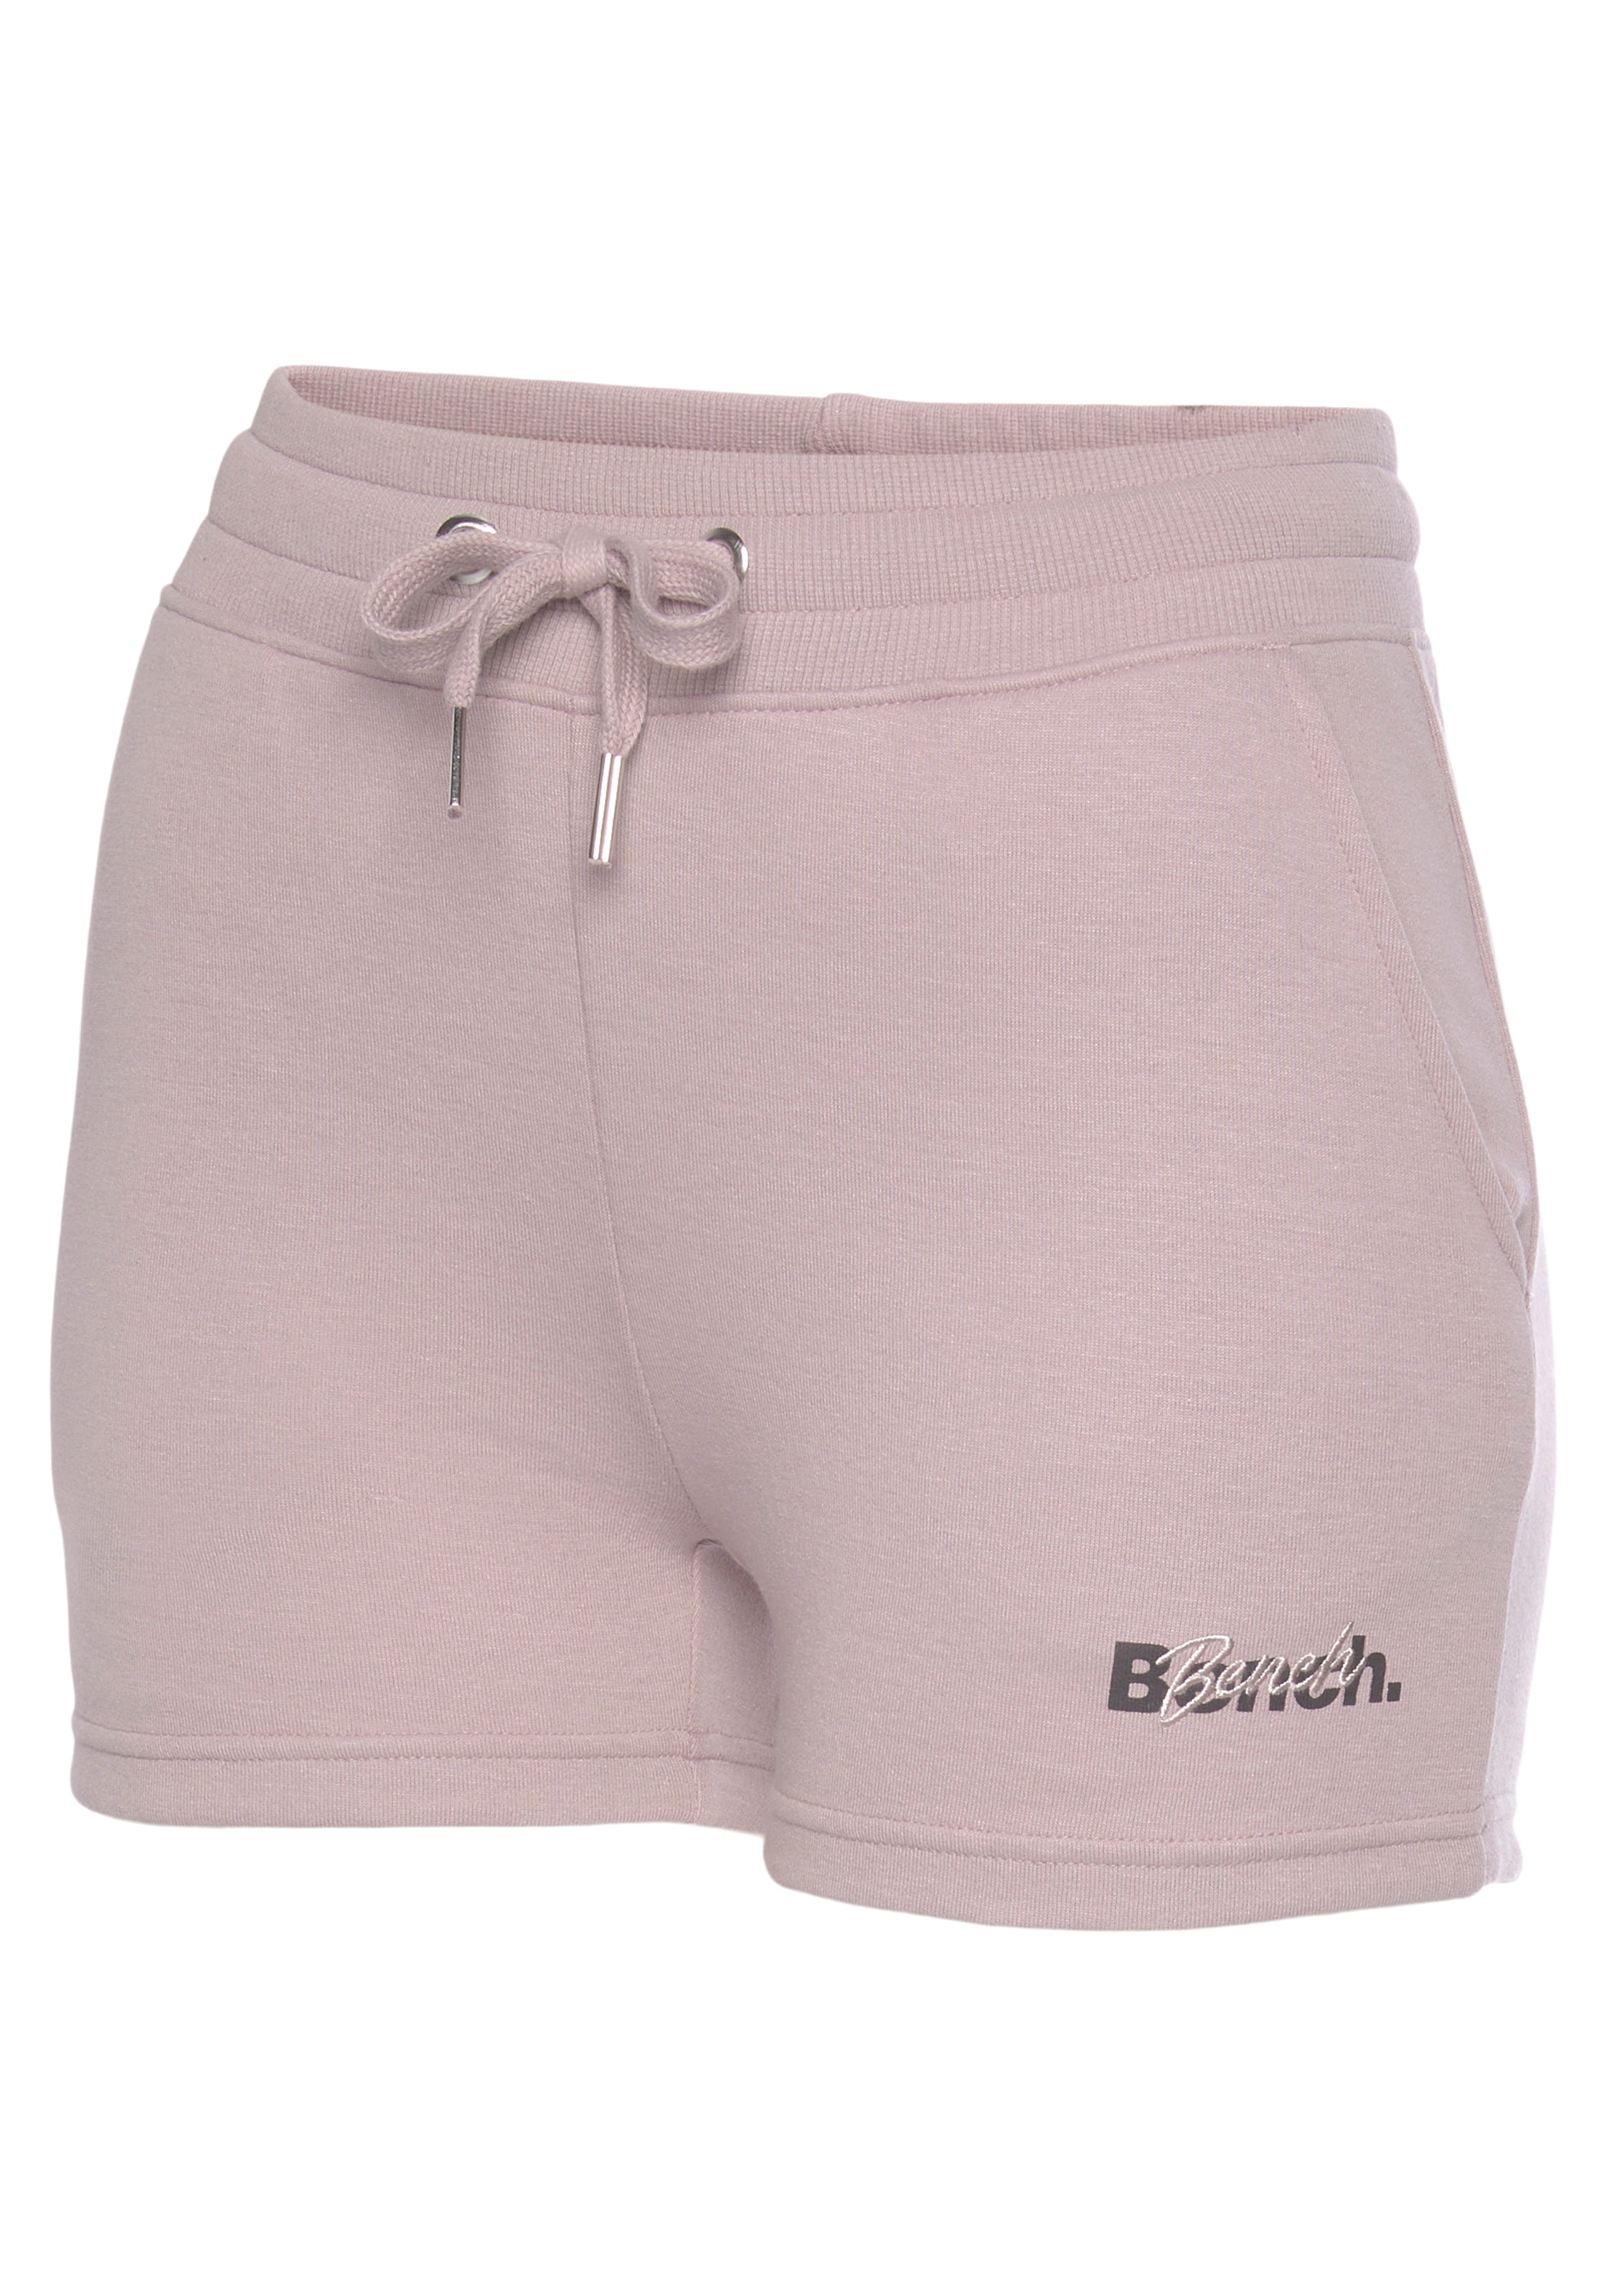 Bench. Loungewear mit bei und Stickerei OTTOversand Shorts, Logodruck